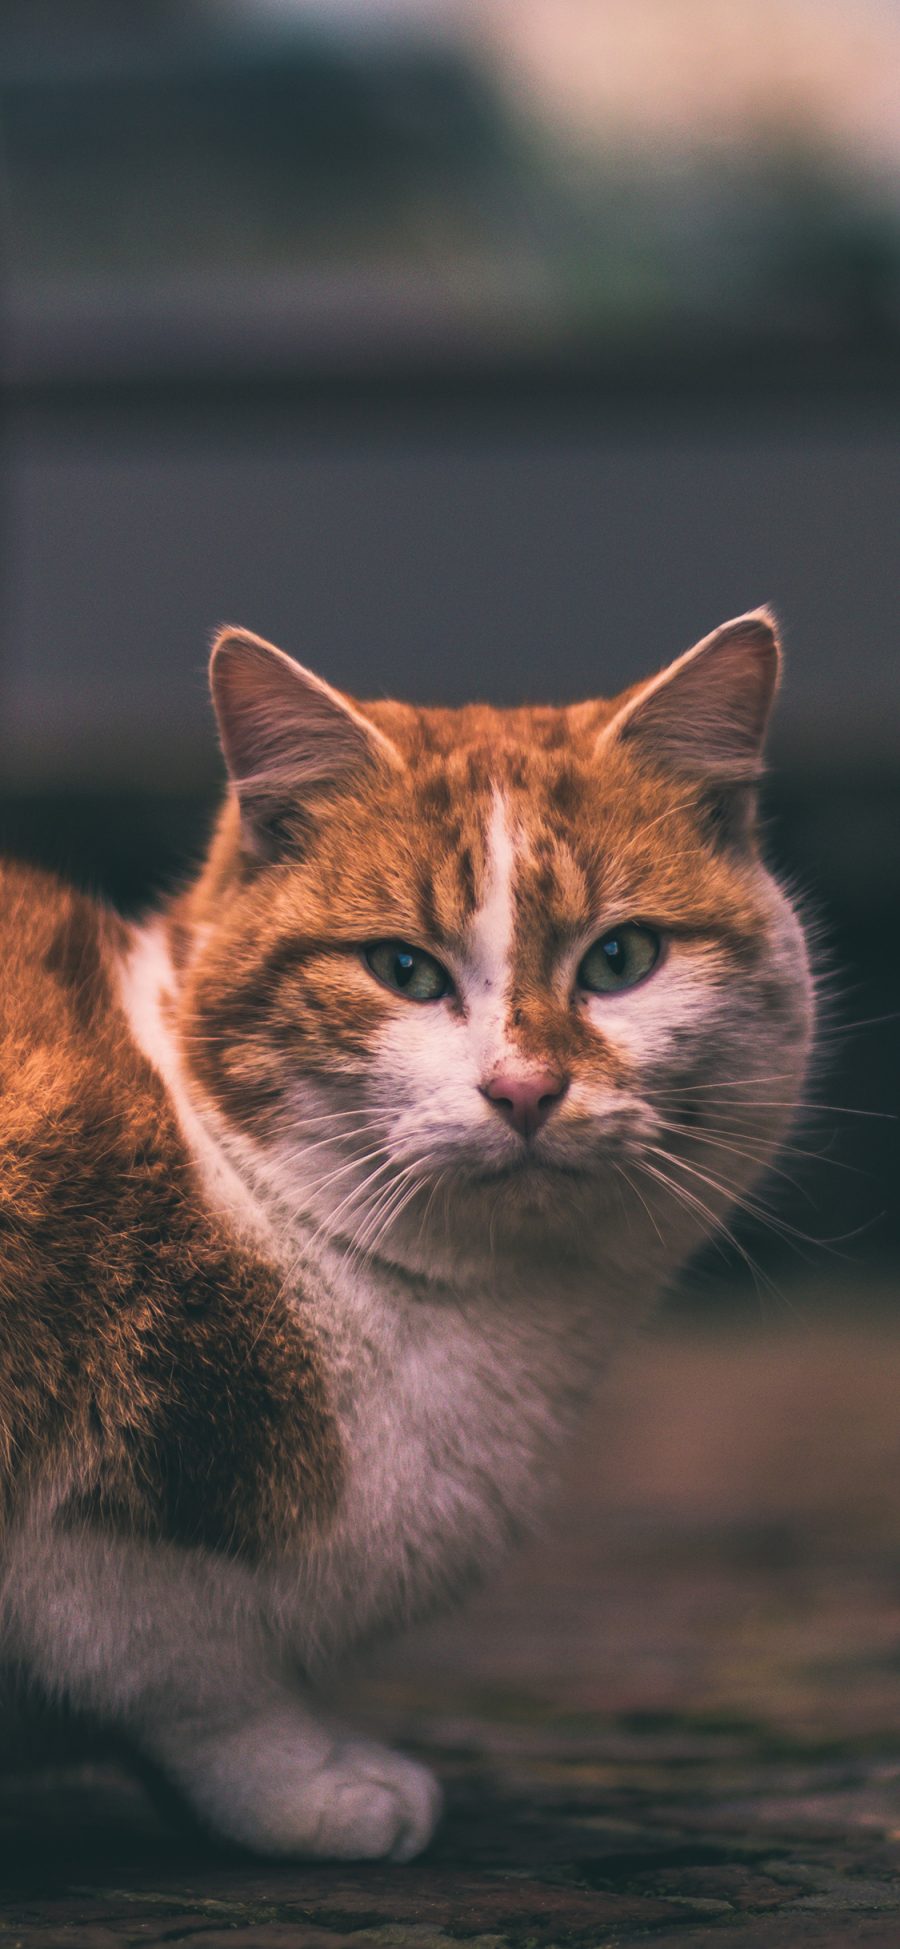 [2436×1125]猫咪 橘猫 肥猫 宠物 苹果手机壁纸图片